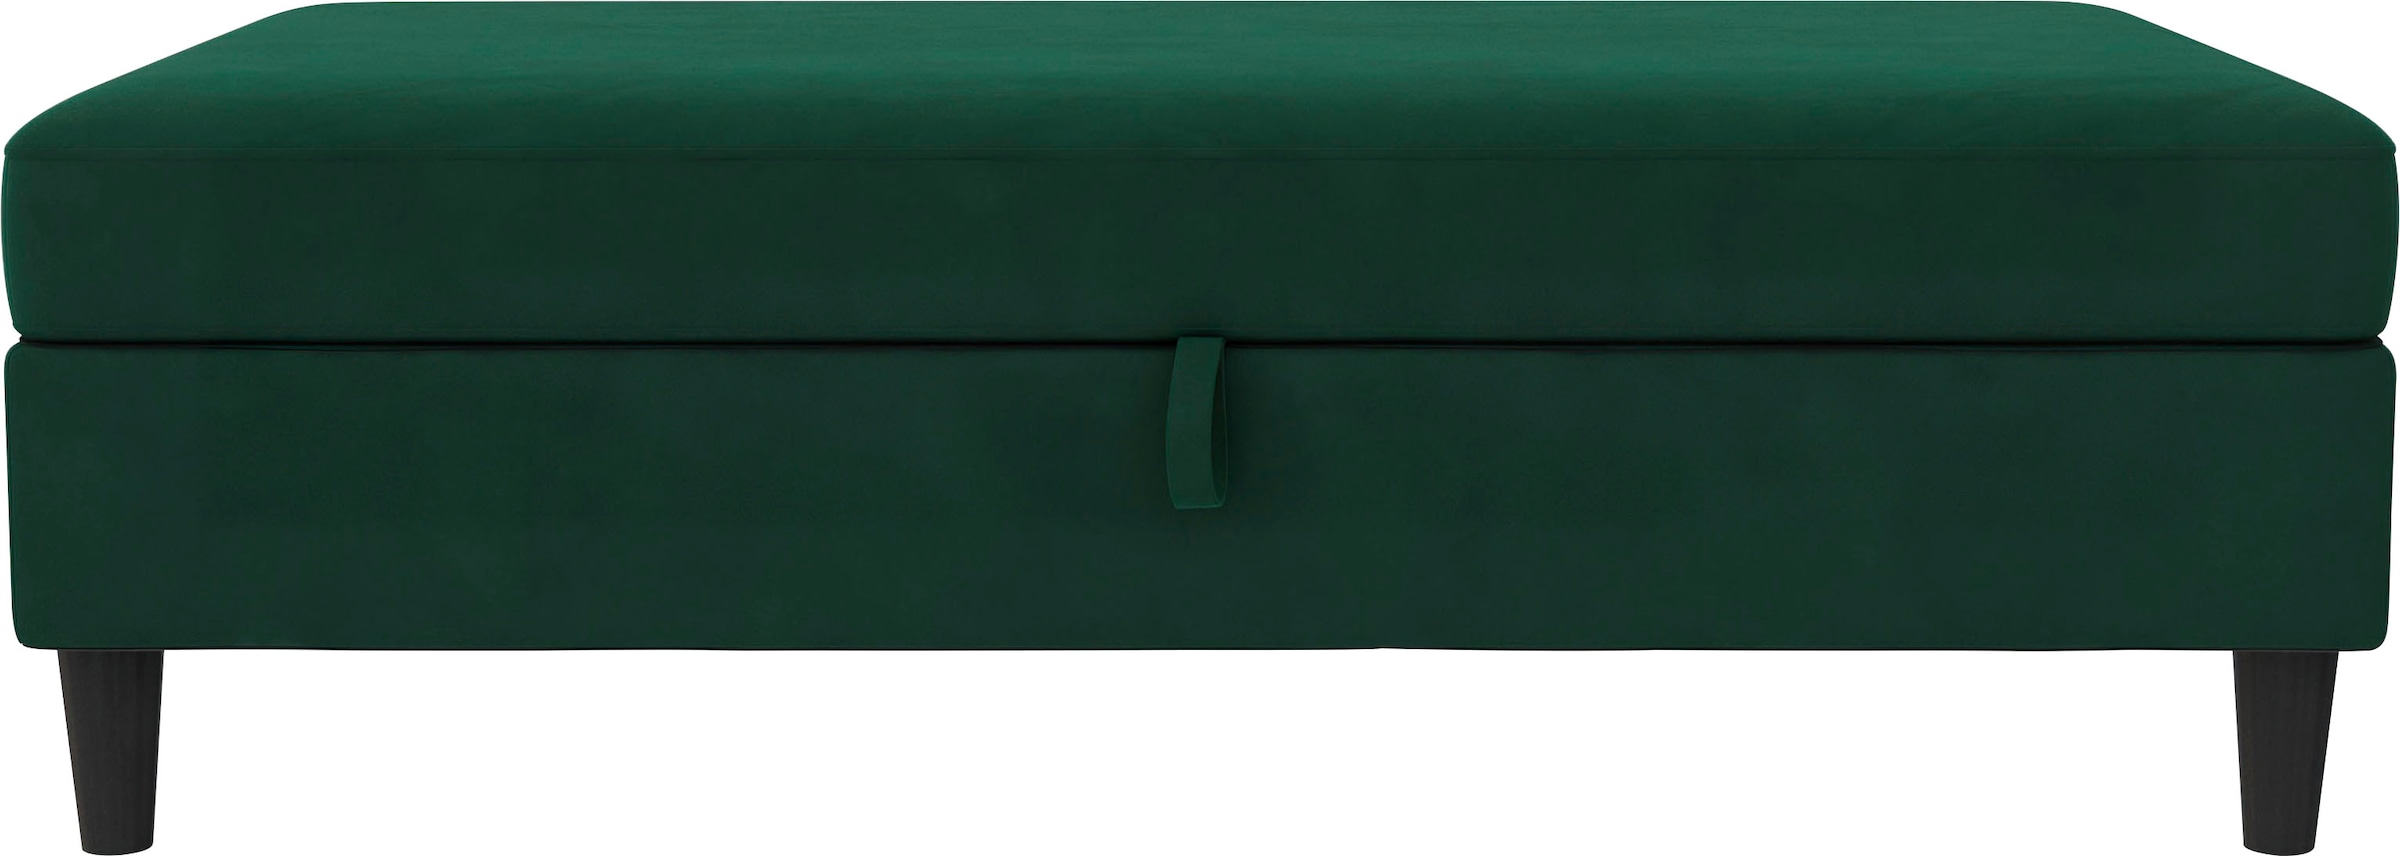 Dorel Home Stauraumhocker »Hartford«, Polsterhocker mit Stauraum, frei im Raum stellbar, Sitzhöhe 43 cm